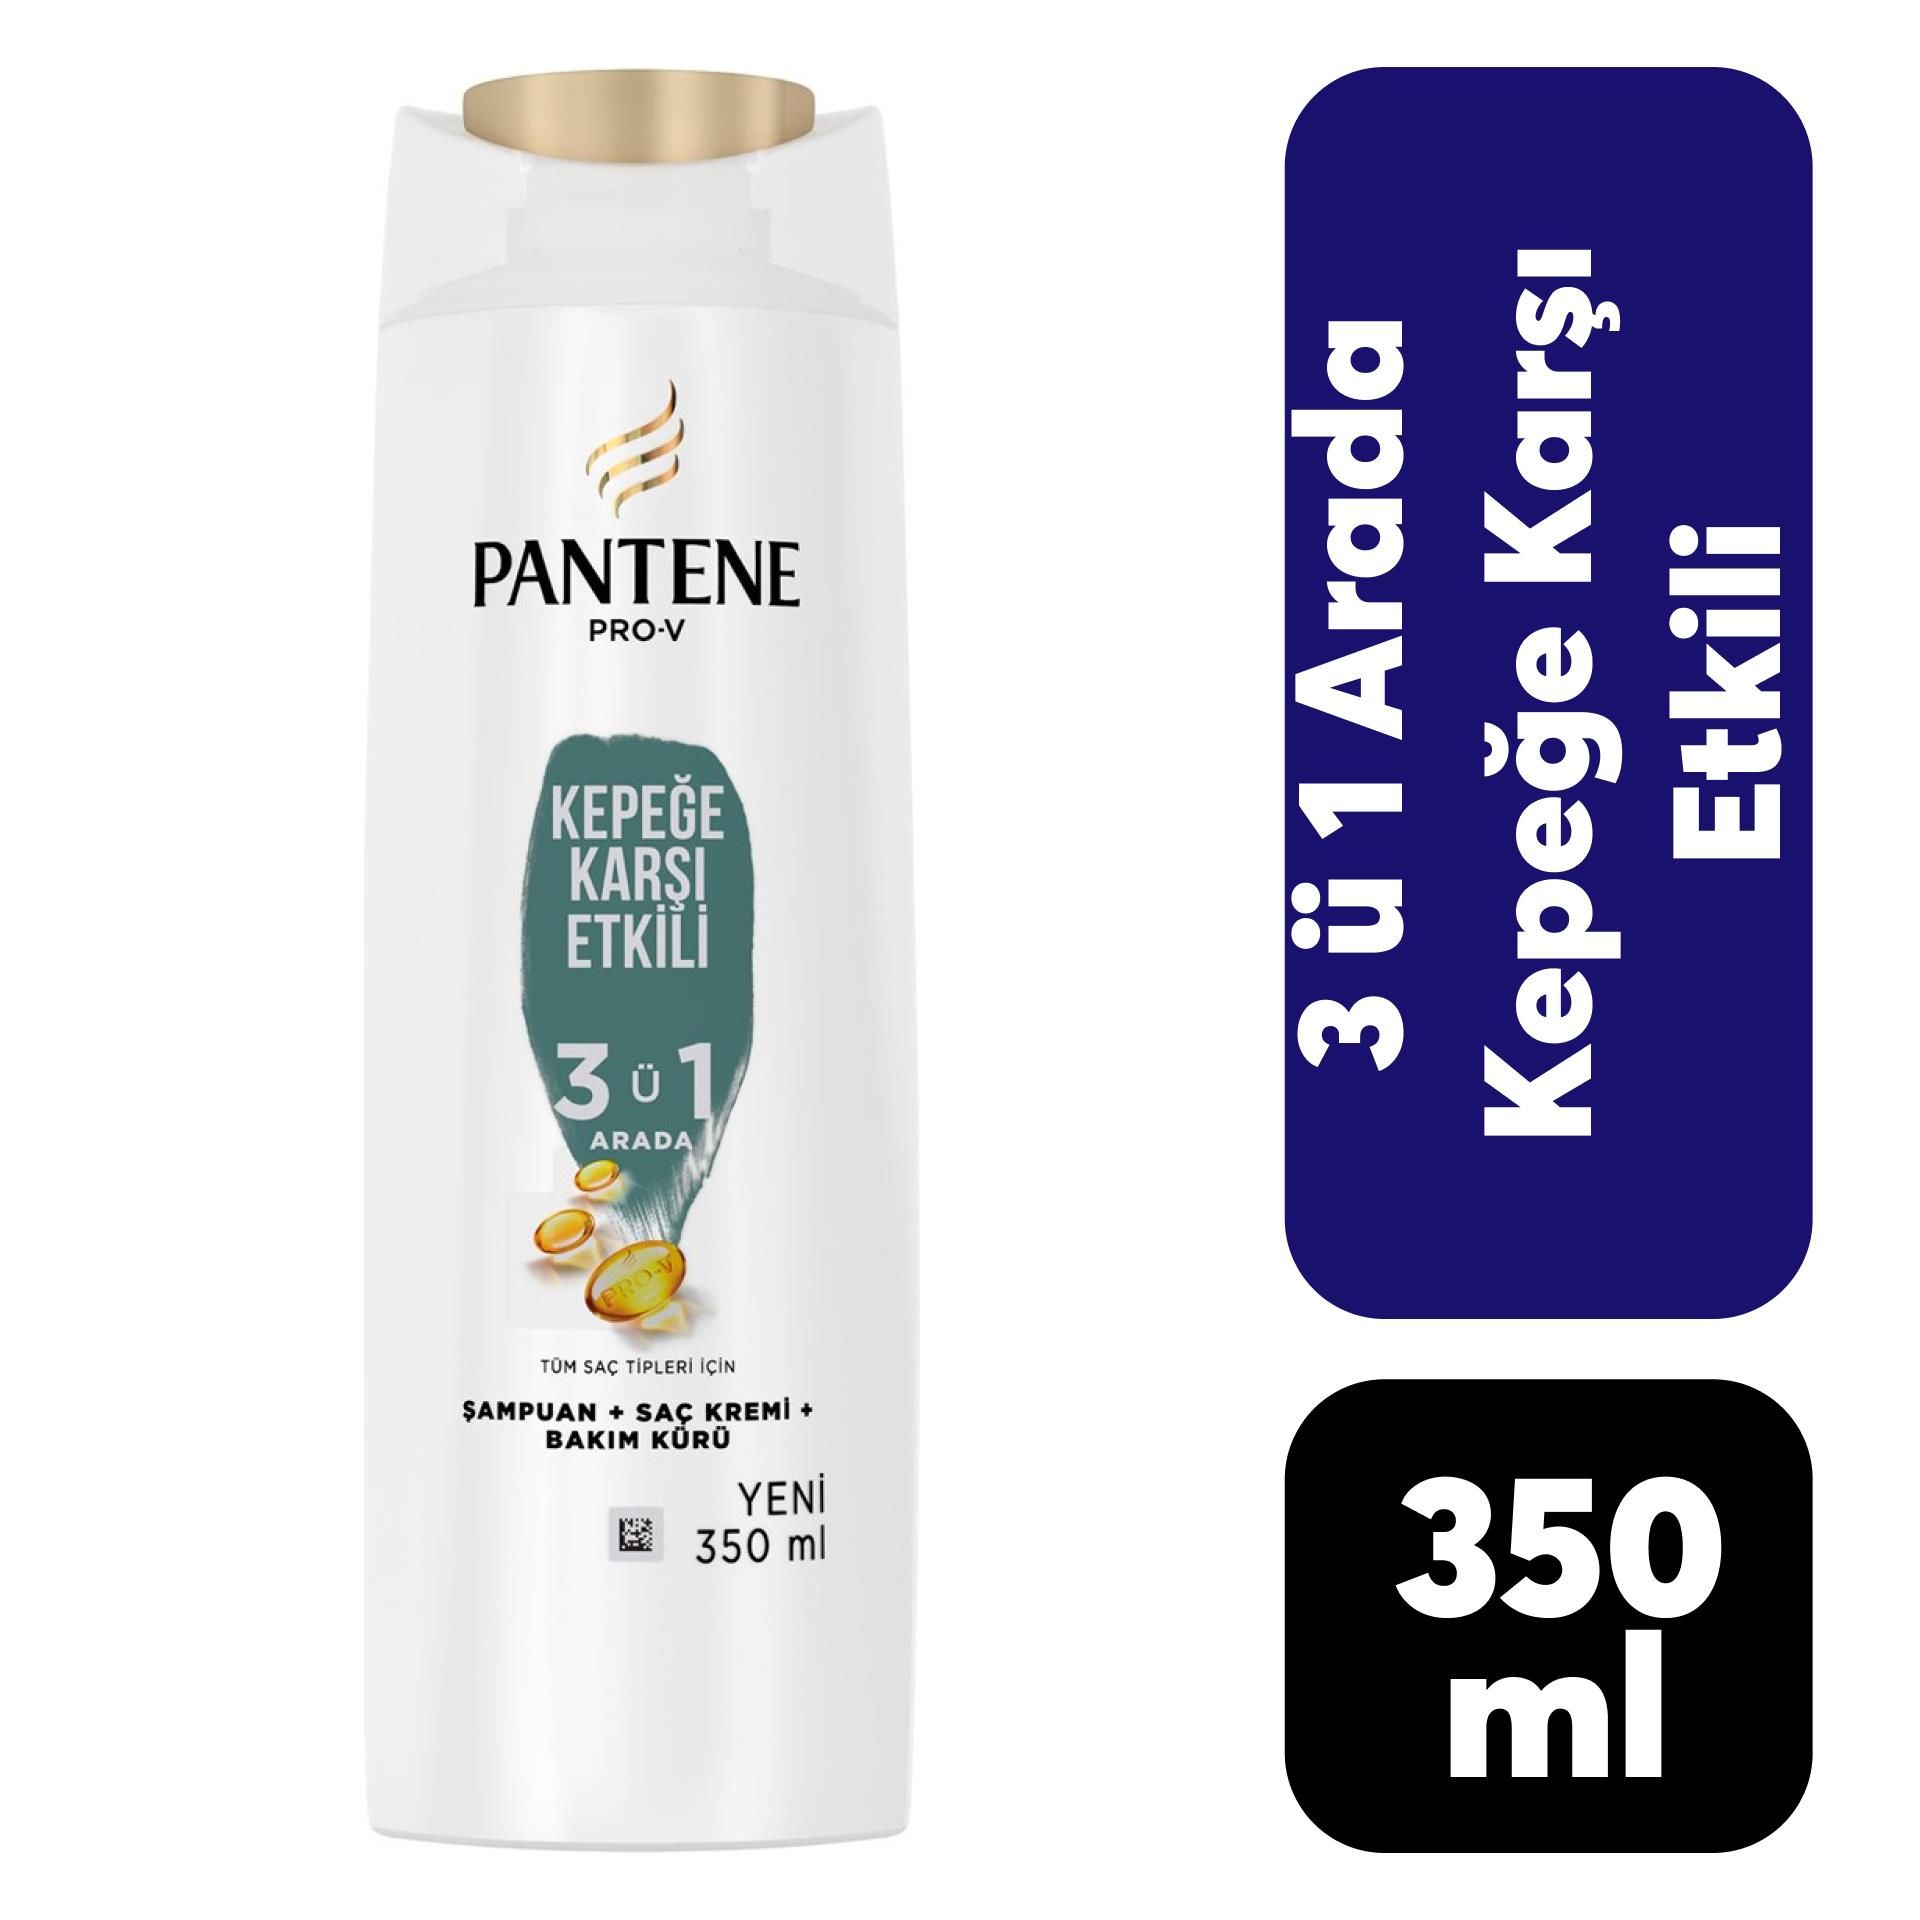 Pantene Şampuan 350 ml 3-1 Kepeğe Karşı Etkili